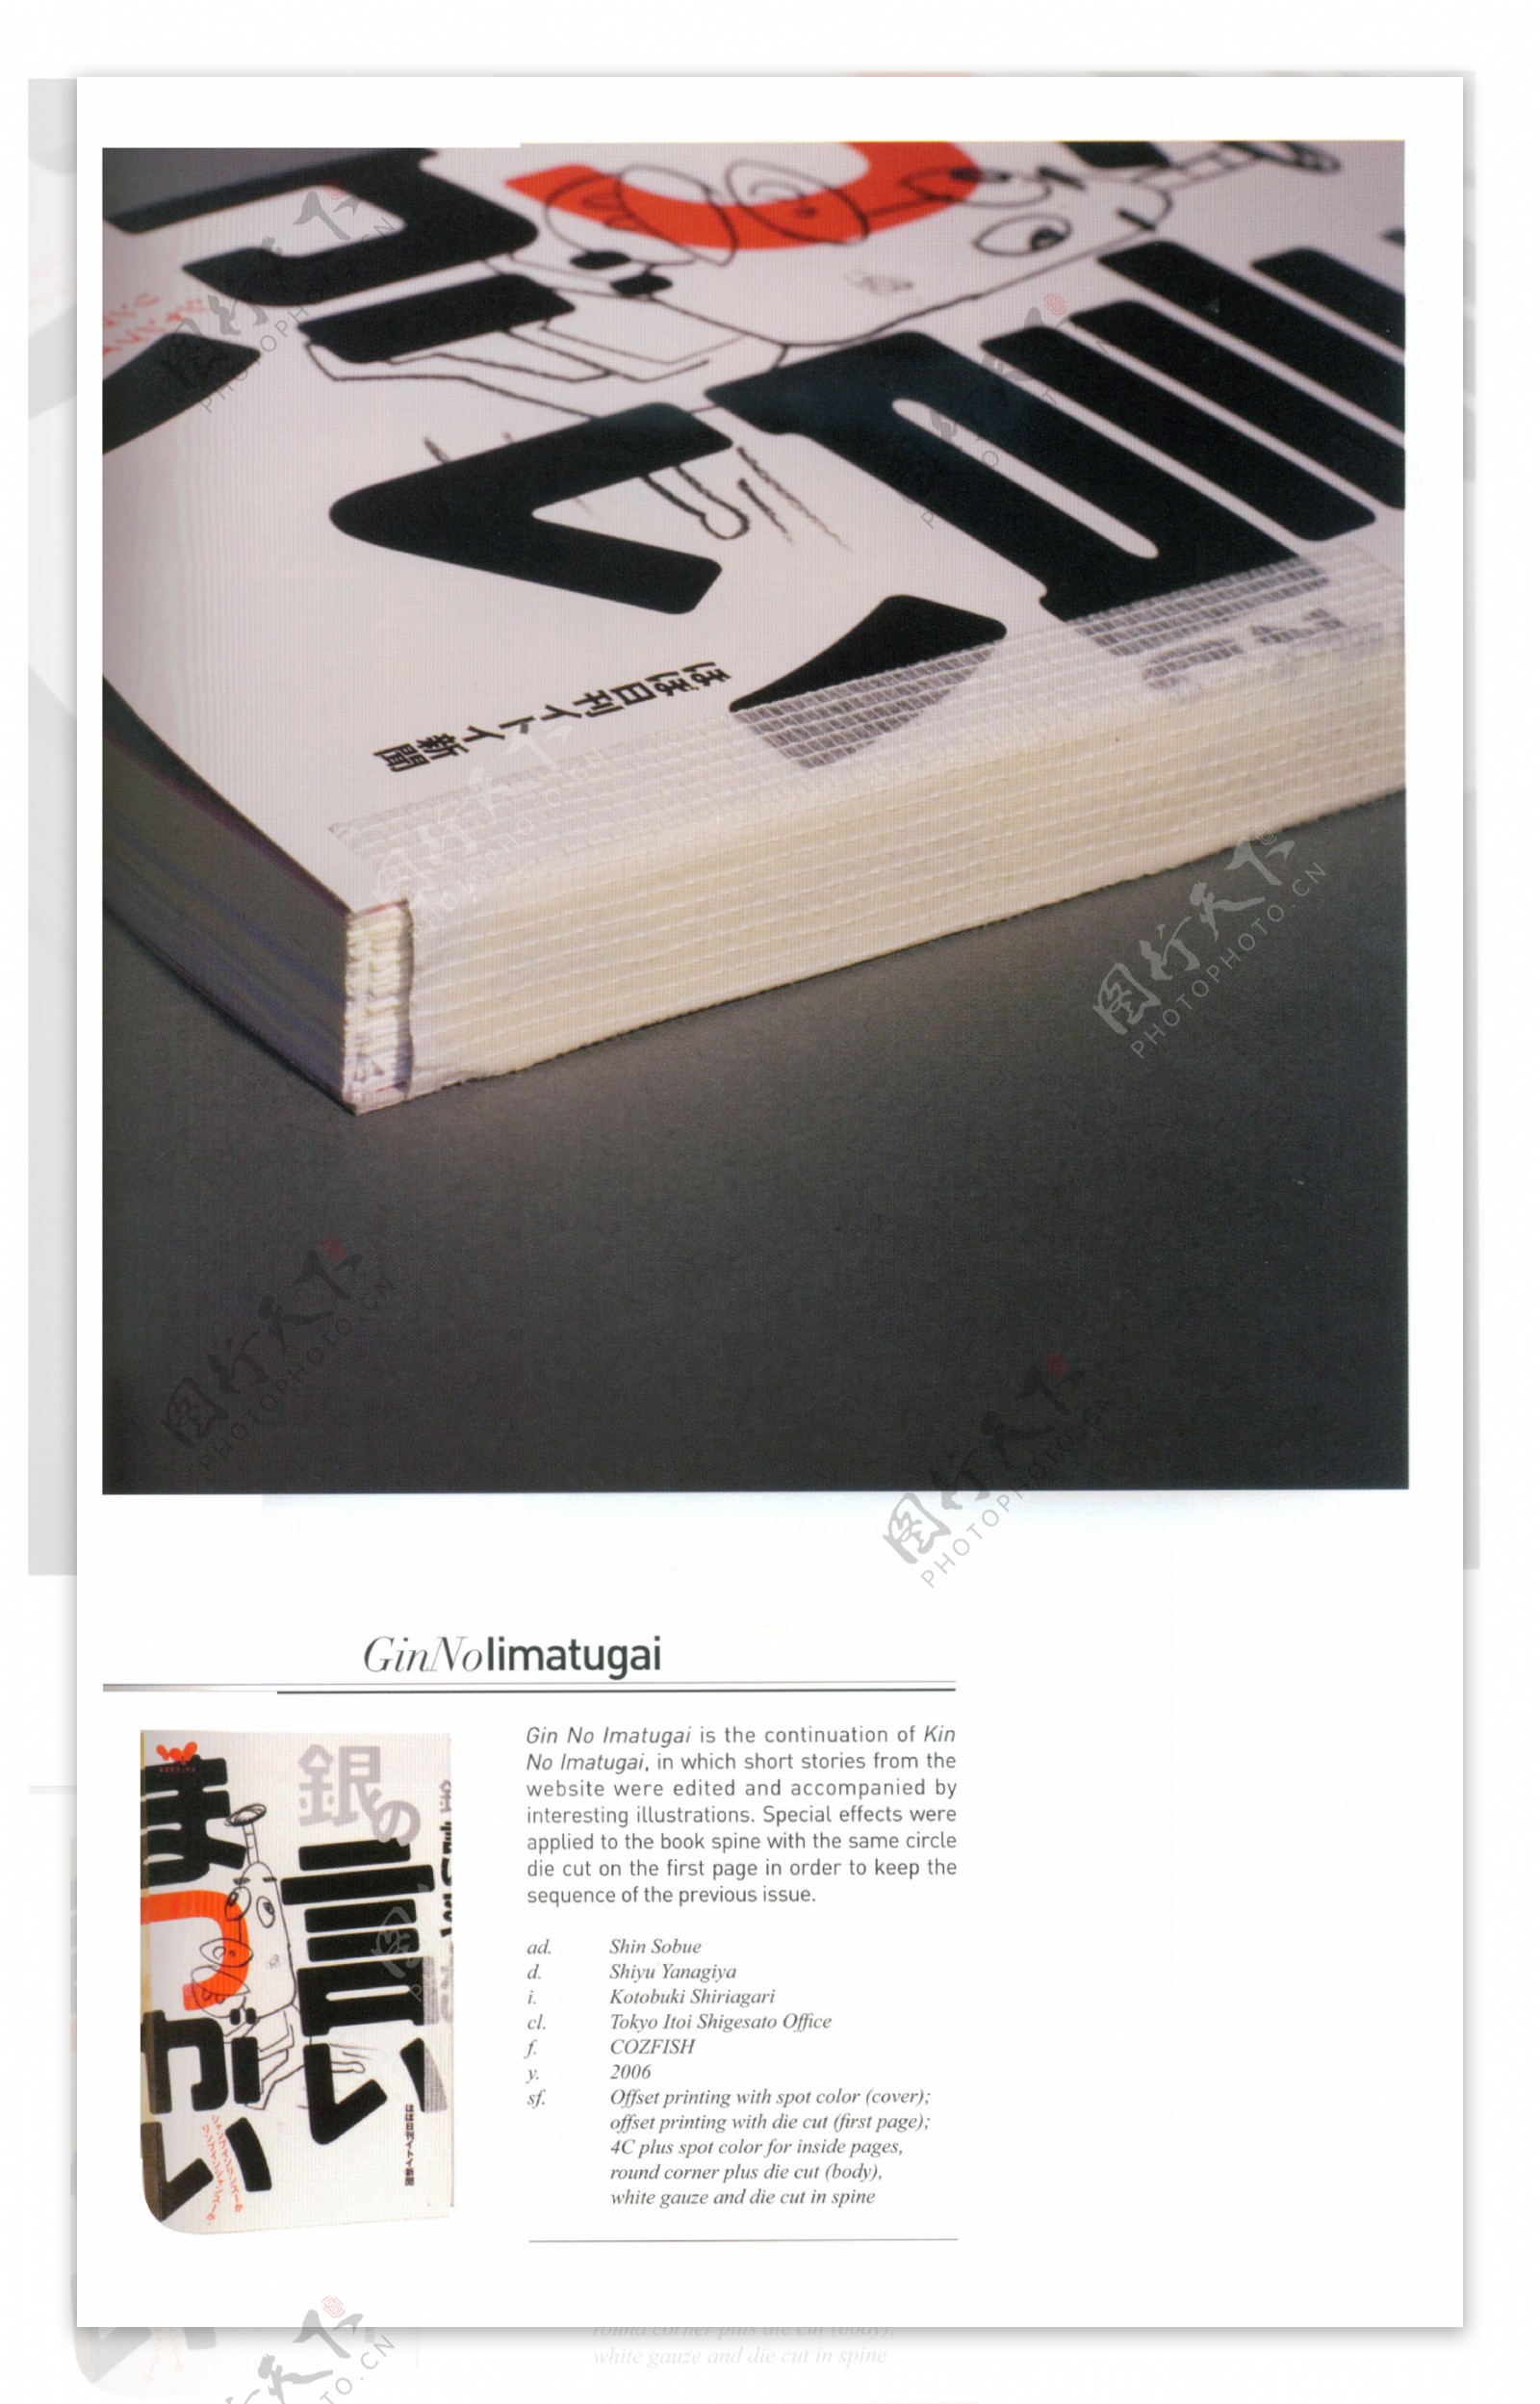 装帧设计书籍装帧版式设计0184